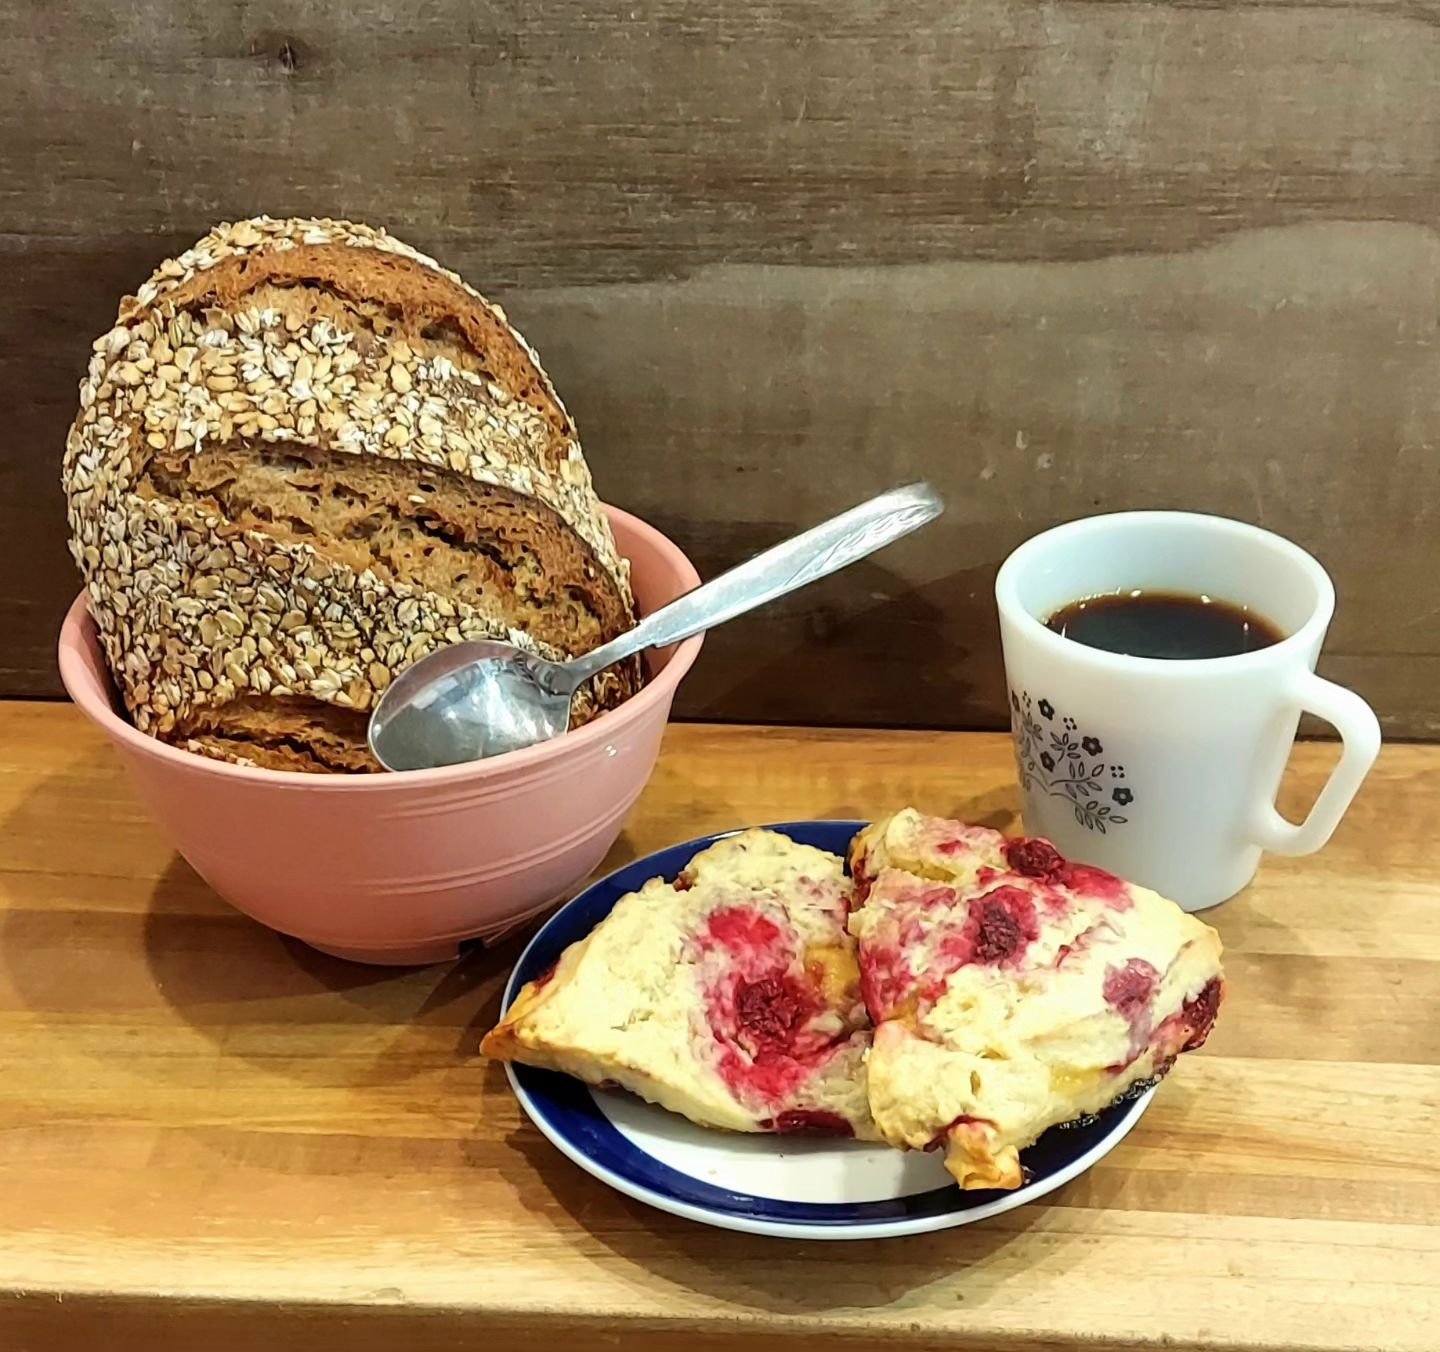 Oatty Oatty Oatty Oat Bread
&amp;
Raspberry Lemon Curd Scones
&amp;
@rootsroasting Coffee

All part of a well balanced Brake Bread Breakfast!

Retail Window is *open*
Thurs | Fri | Sat
8am - Noon